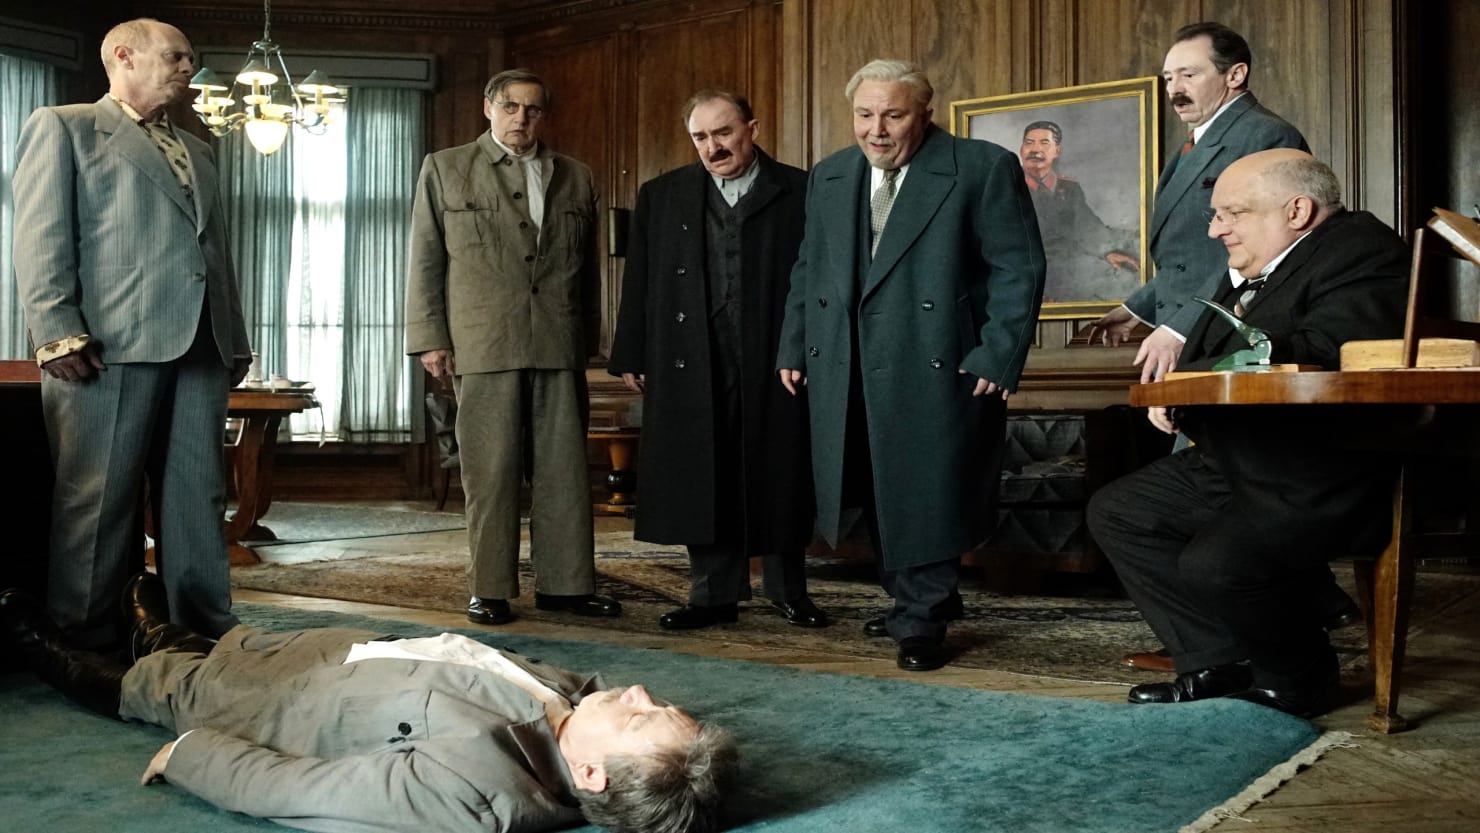 H Ρωσία απαγόρευσε την προβολή ταινίας για τον θάνατο του Στάλιν